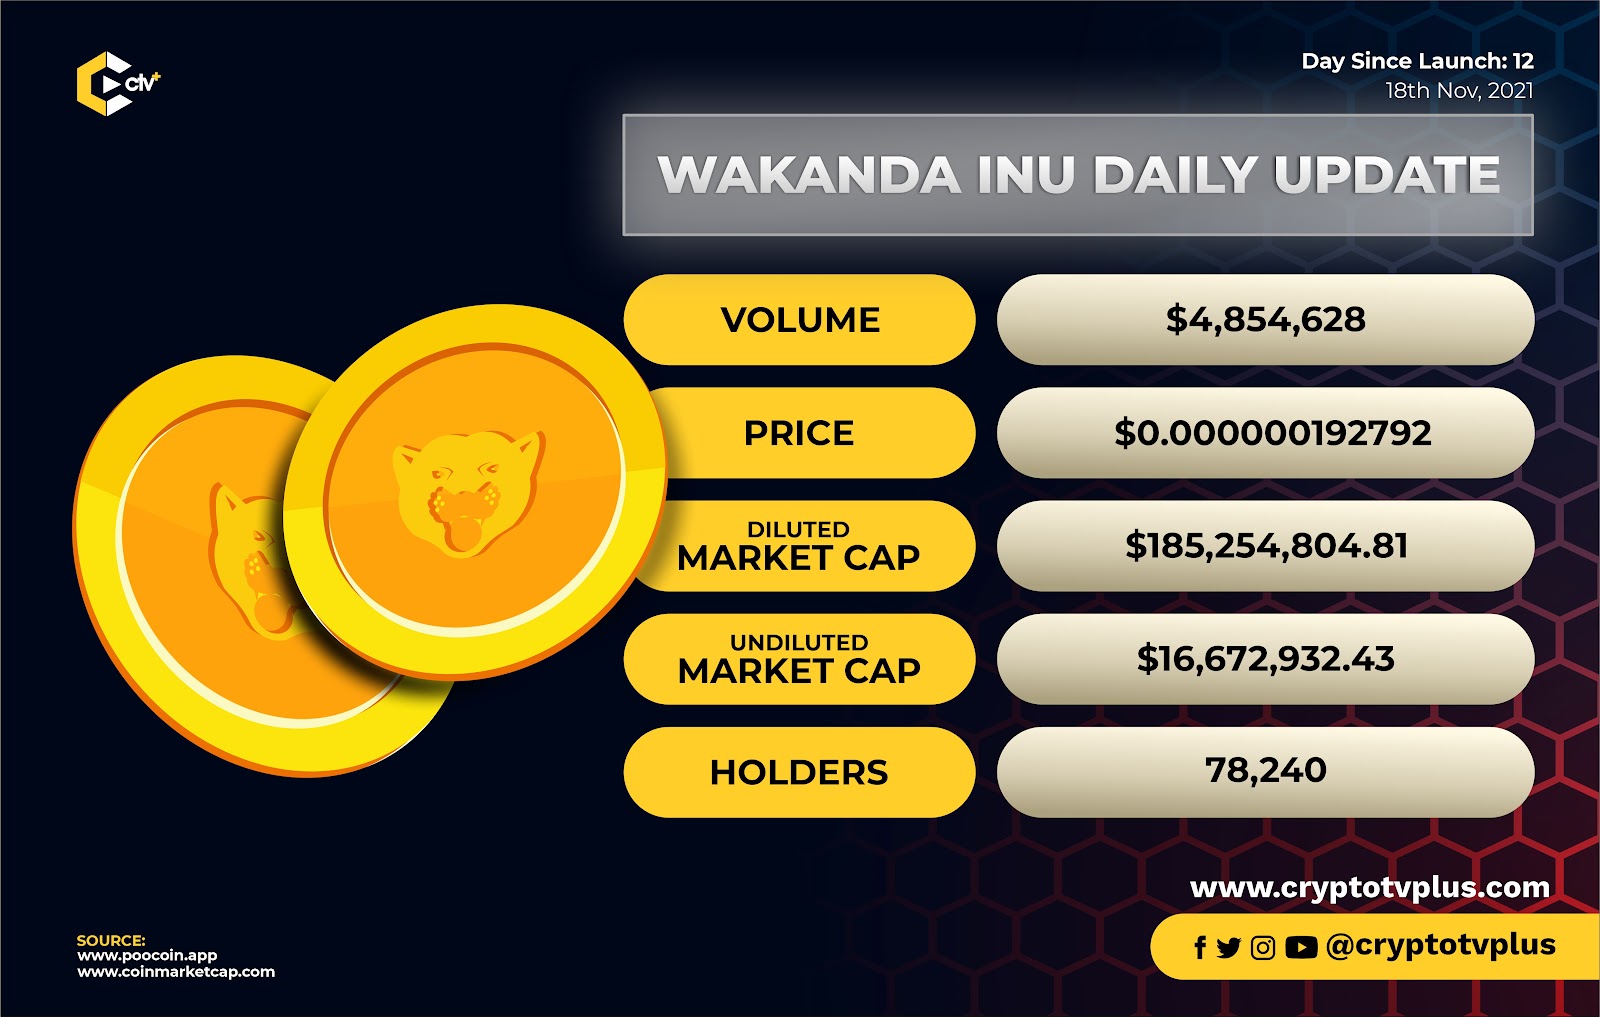 Daily Price, Volume and Price Update on Wakanda Inu